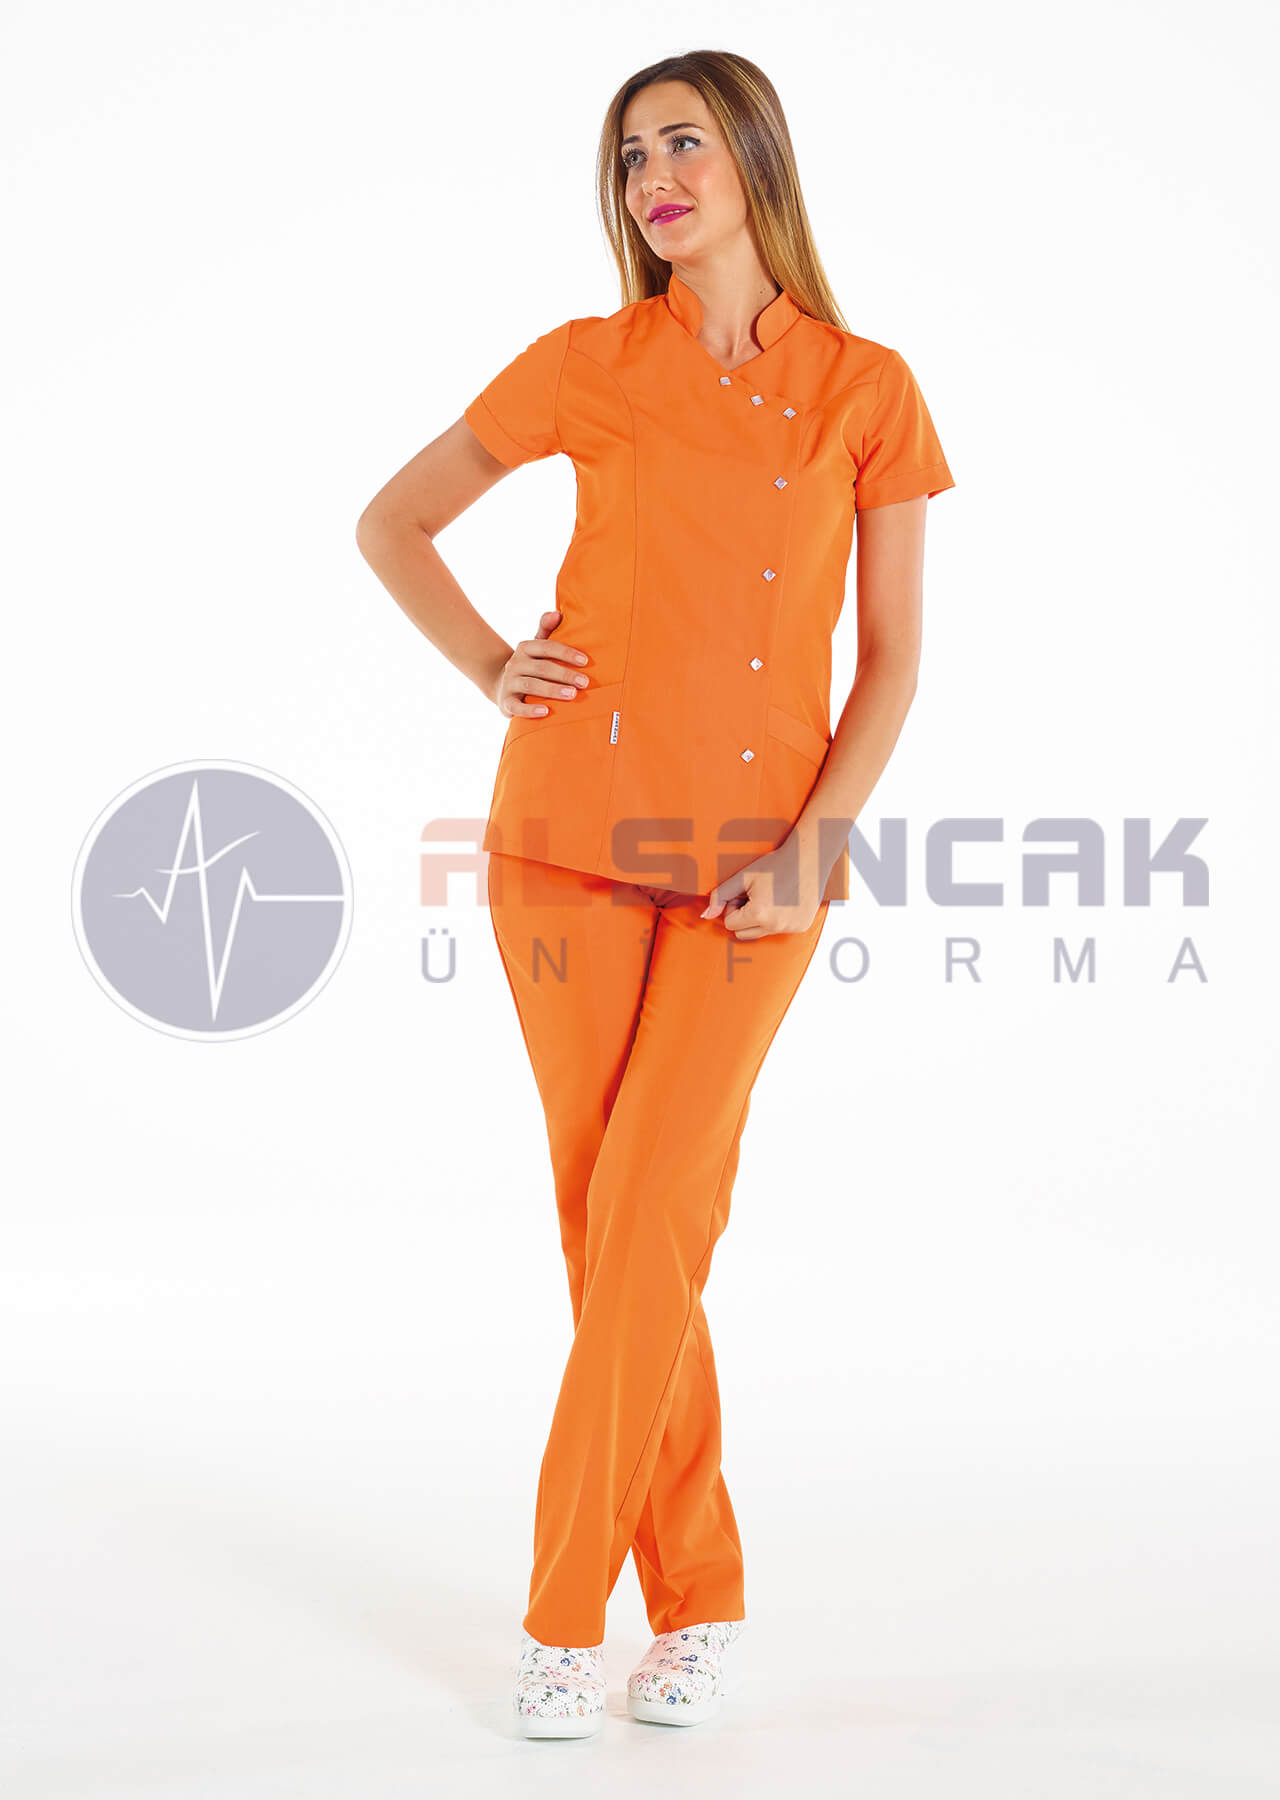 Turuncu Luxe Model Hemşire ve Doktor Forması Takımı